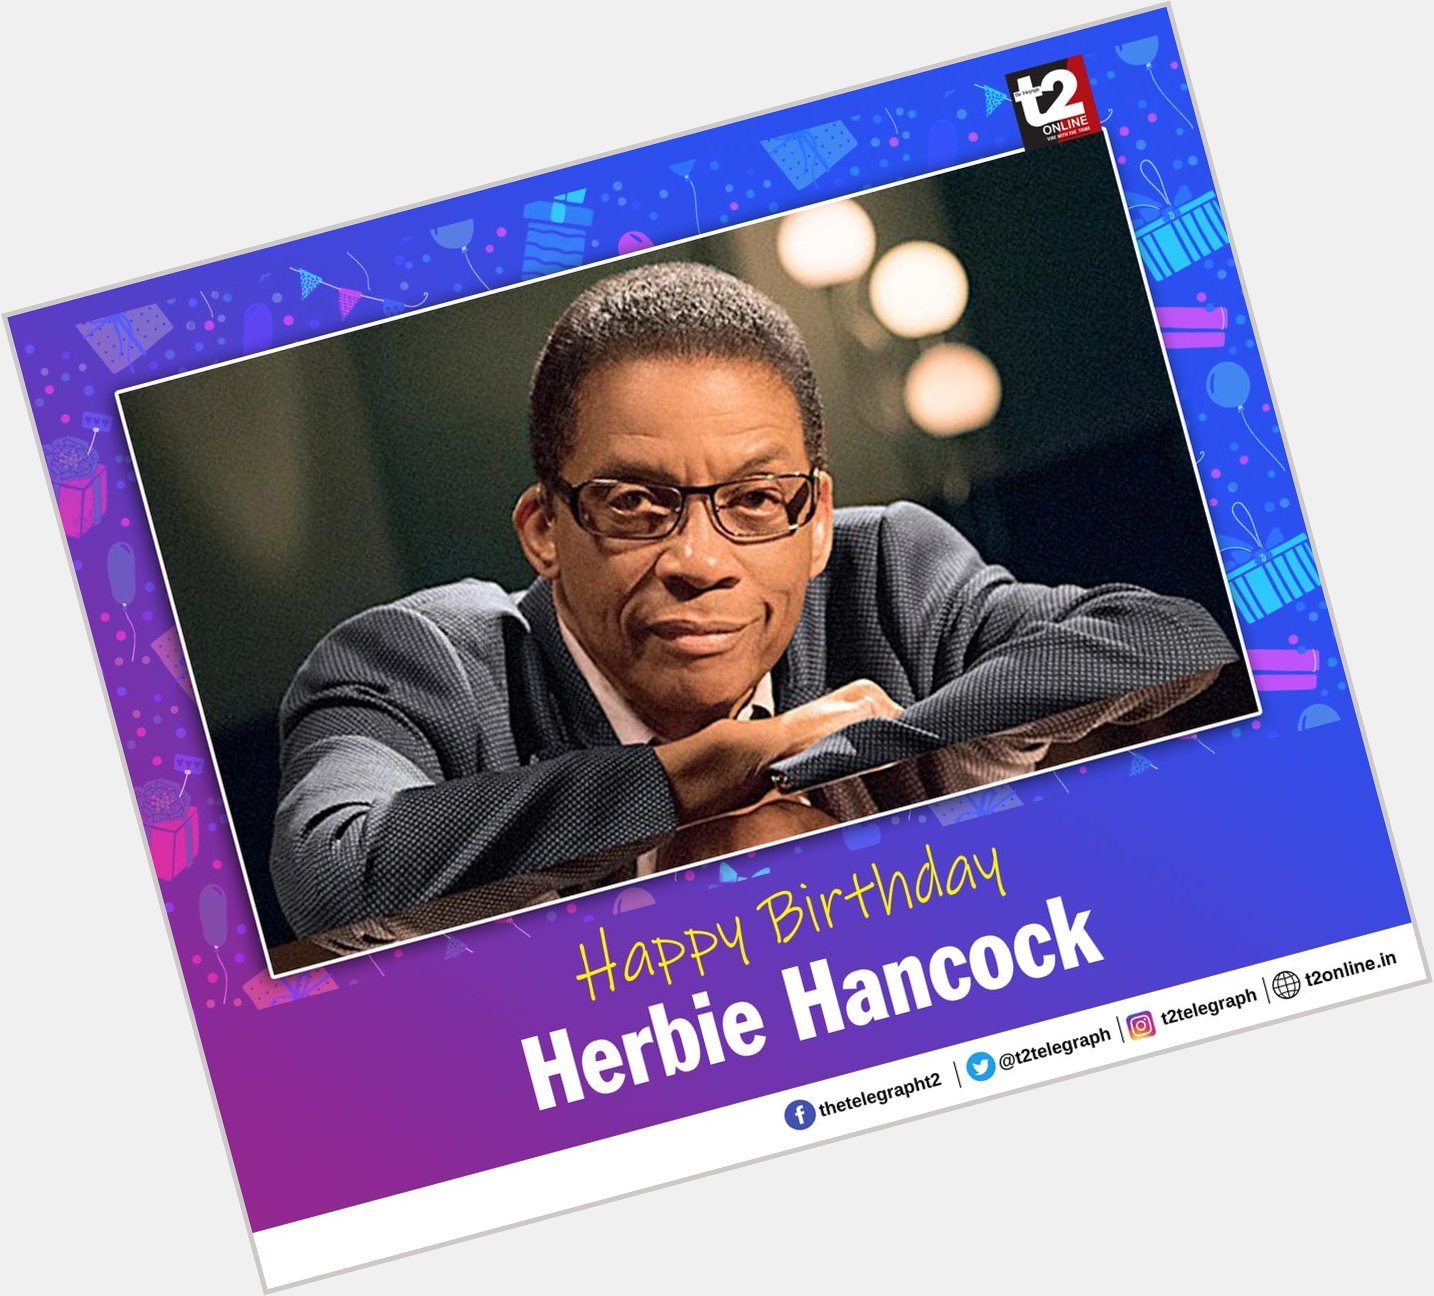 Happy birthday to the jazz giant, Herbie Hancock. 